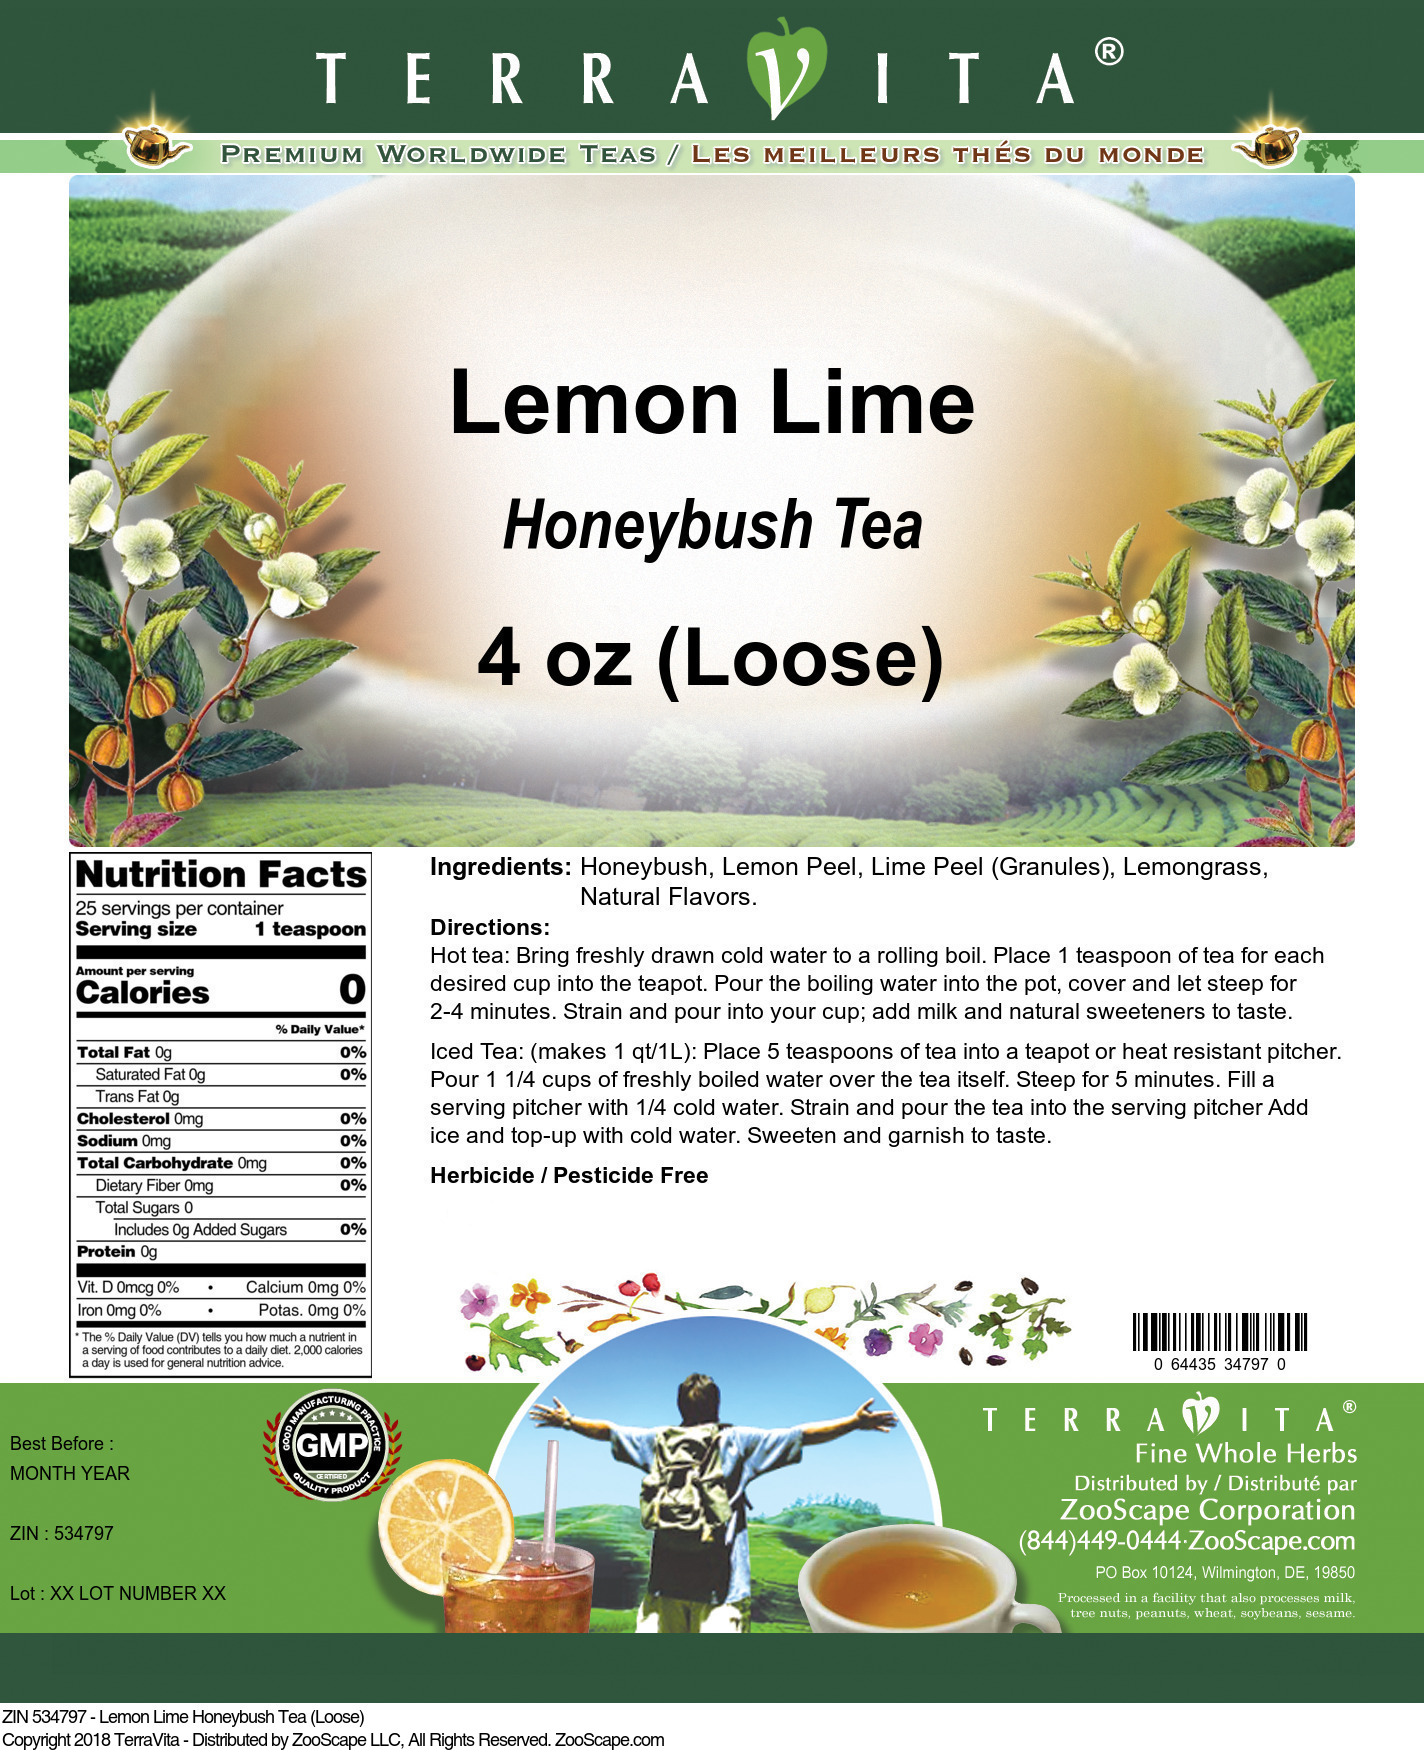 Lemon Lime Honeybush Tea (Loose) - Label